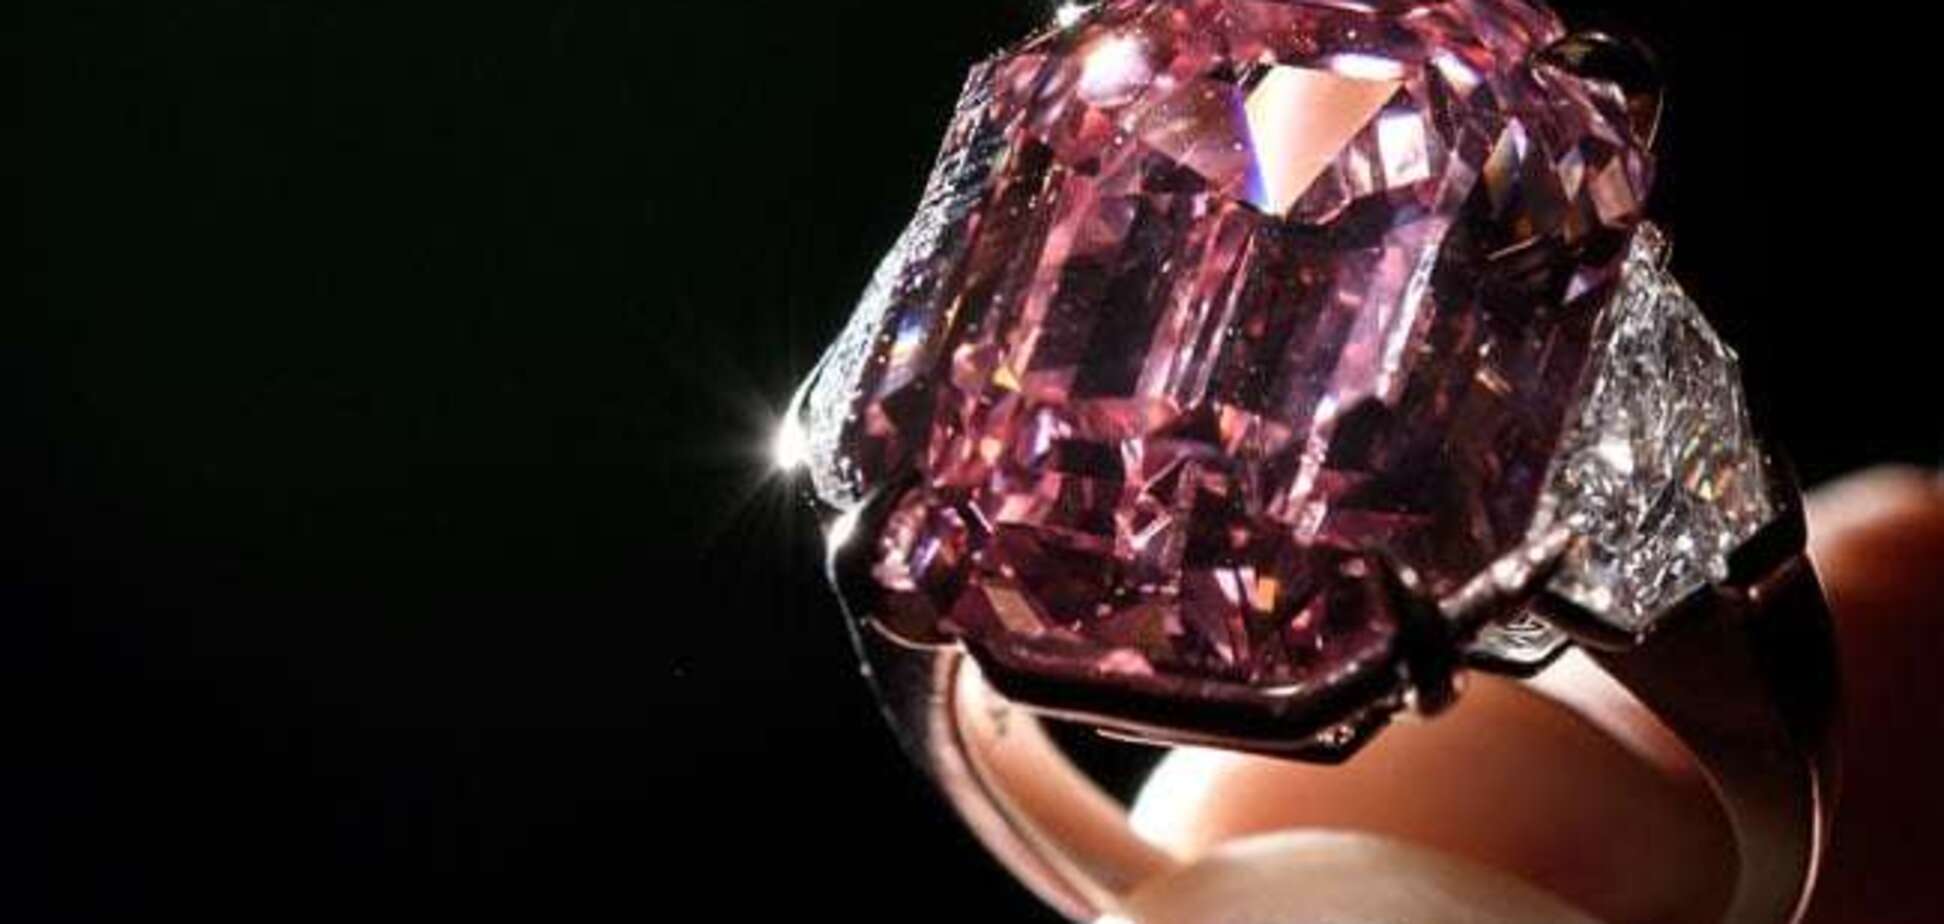 Самый красивый в мире бриллиант продали за рекордную сумму: опубликованы фото и видео